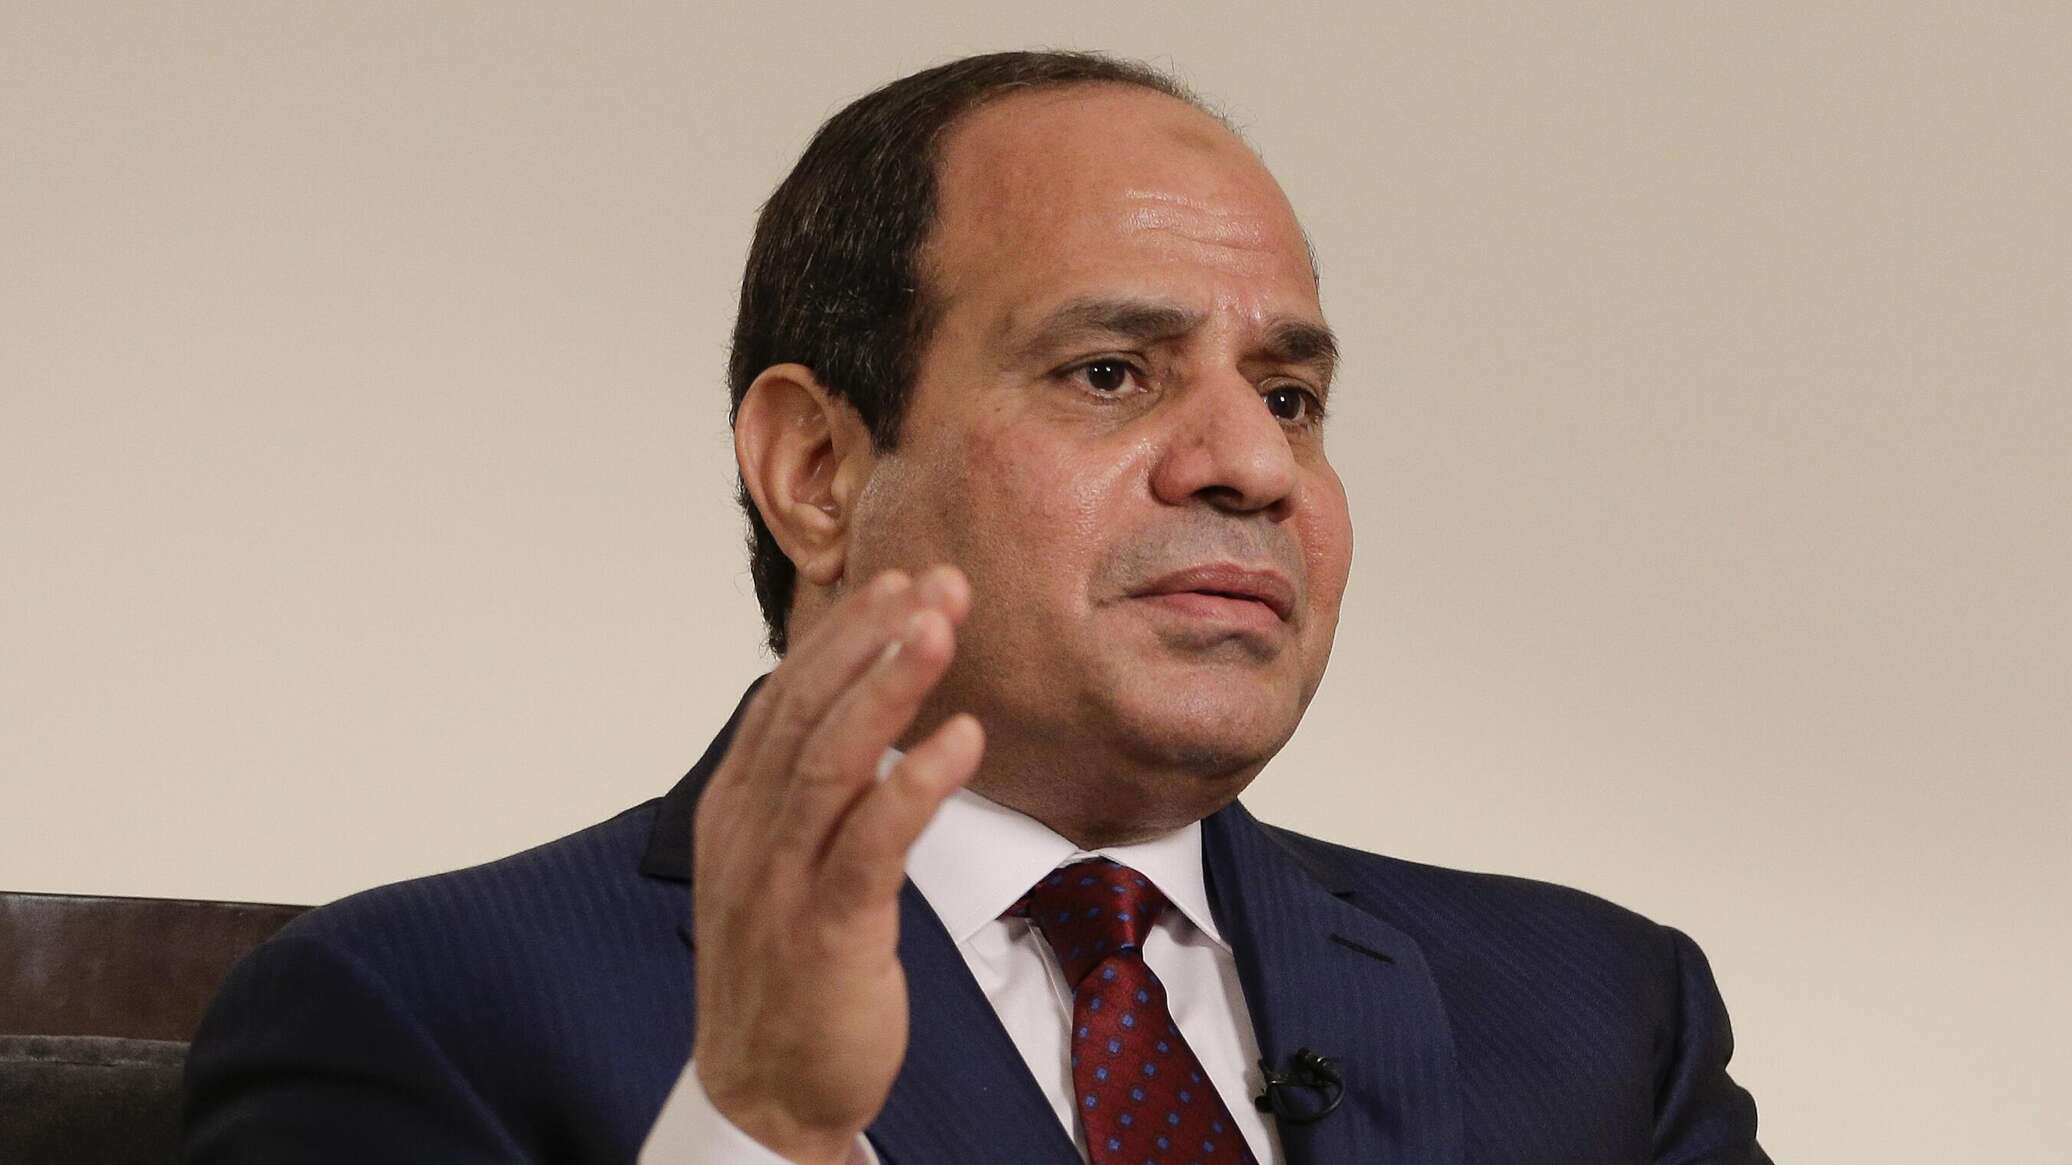 الرئيس المصري يوافق على الانضمام إلى الصيغة المعدلة للاتفاق الأفريقي للتعاون النووي